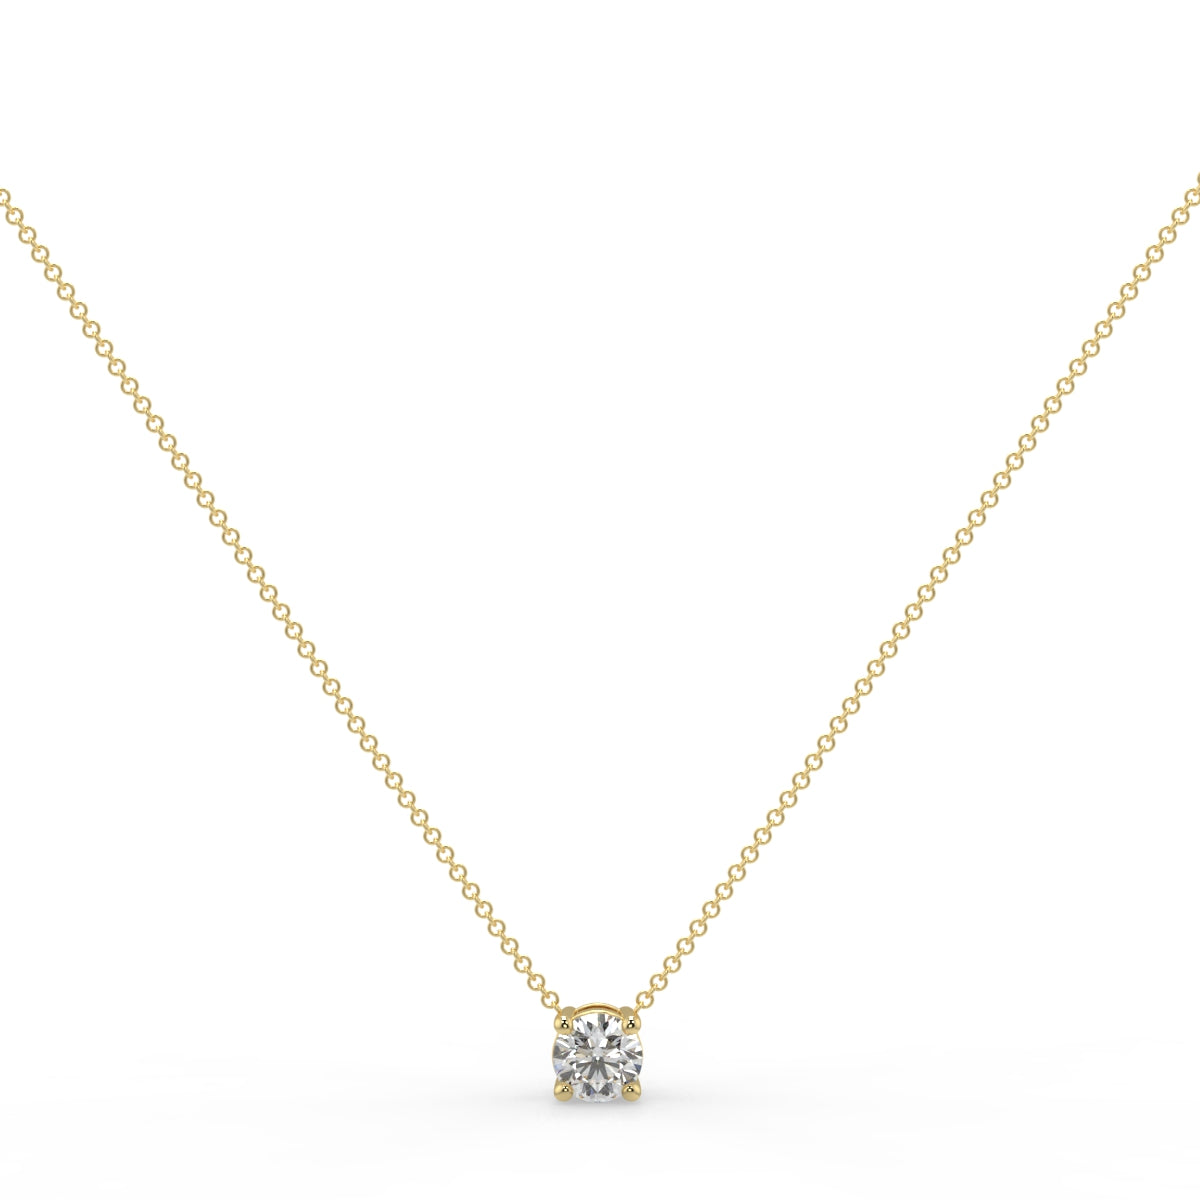 Sophia Solitaire Necklace Round Brilliant Cut Diamond 0.5 carat 